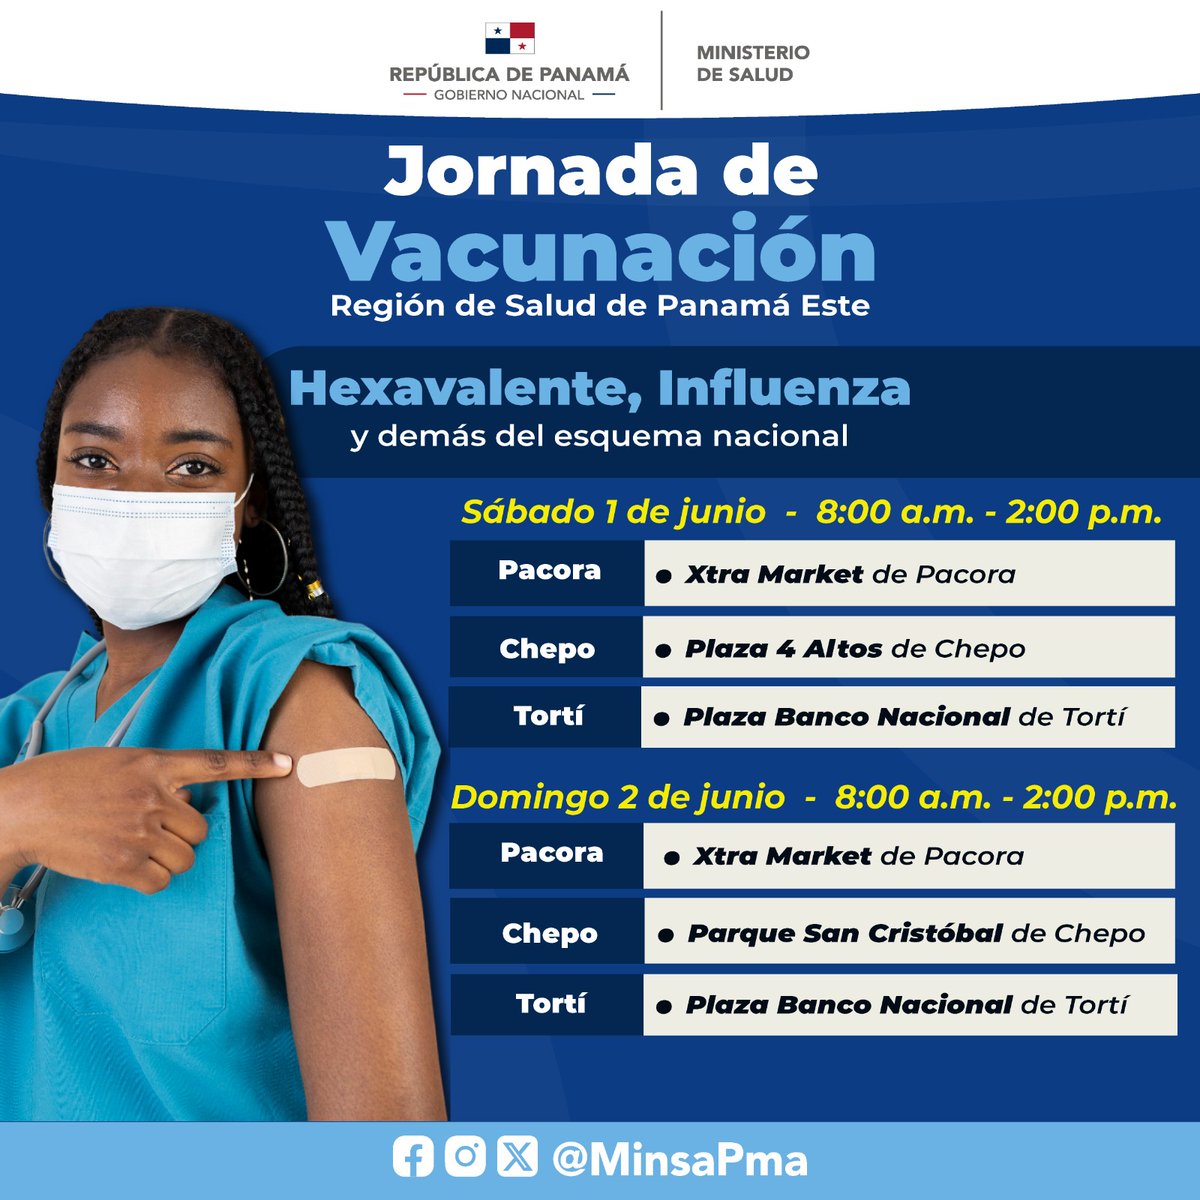 Te invitamos a participar de la Jornada de Vacunación en la Región de Salud de Panamá Este, este 1 y 2 de junio, de las 8:00 a.m. a 2:00 p.m., en donde ofreceremos la vacunas Hexevalente, Influenza y demás dosis del esquema nacional, totalmente gratis.